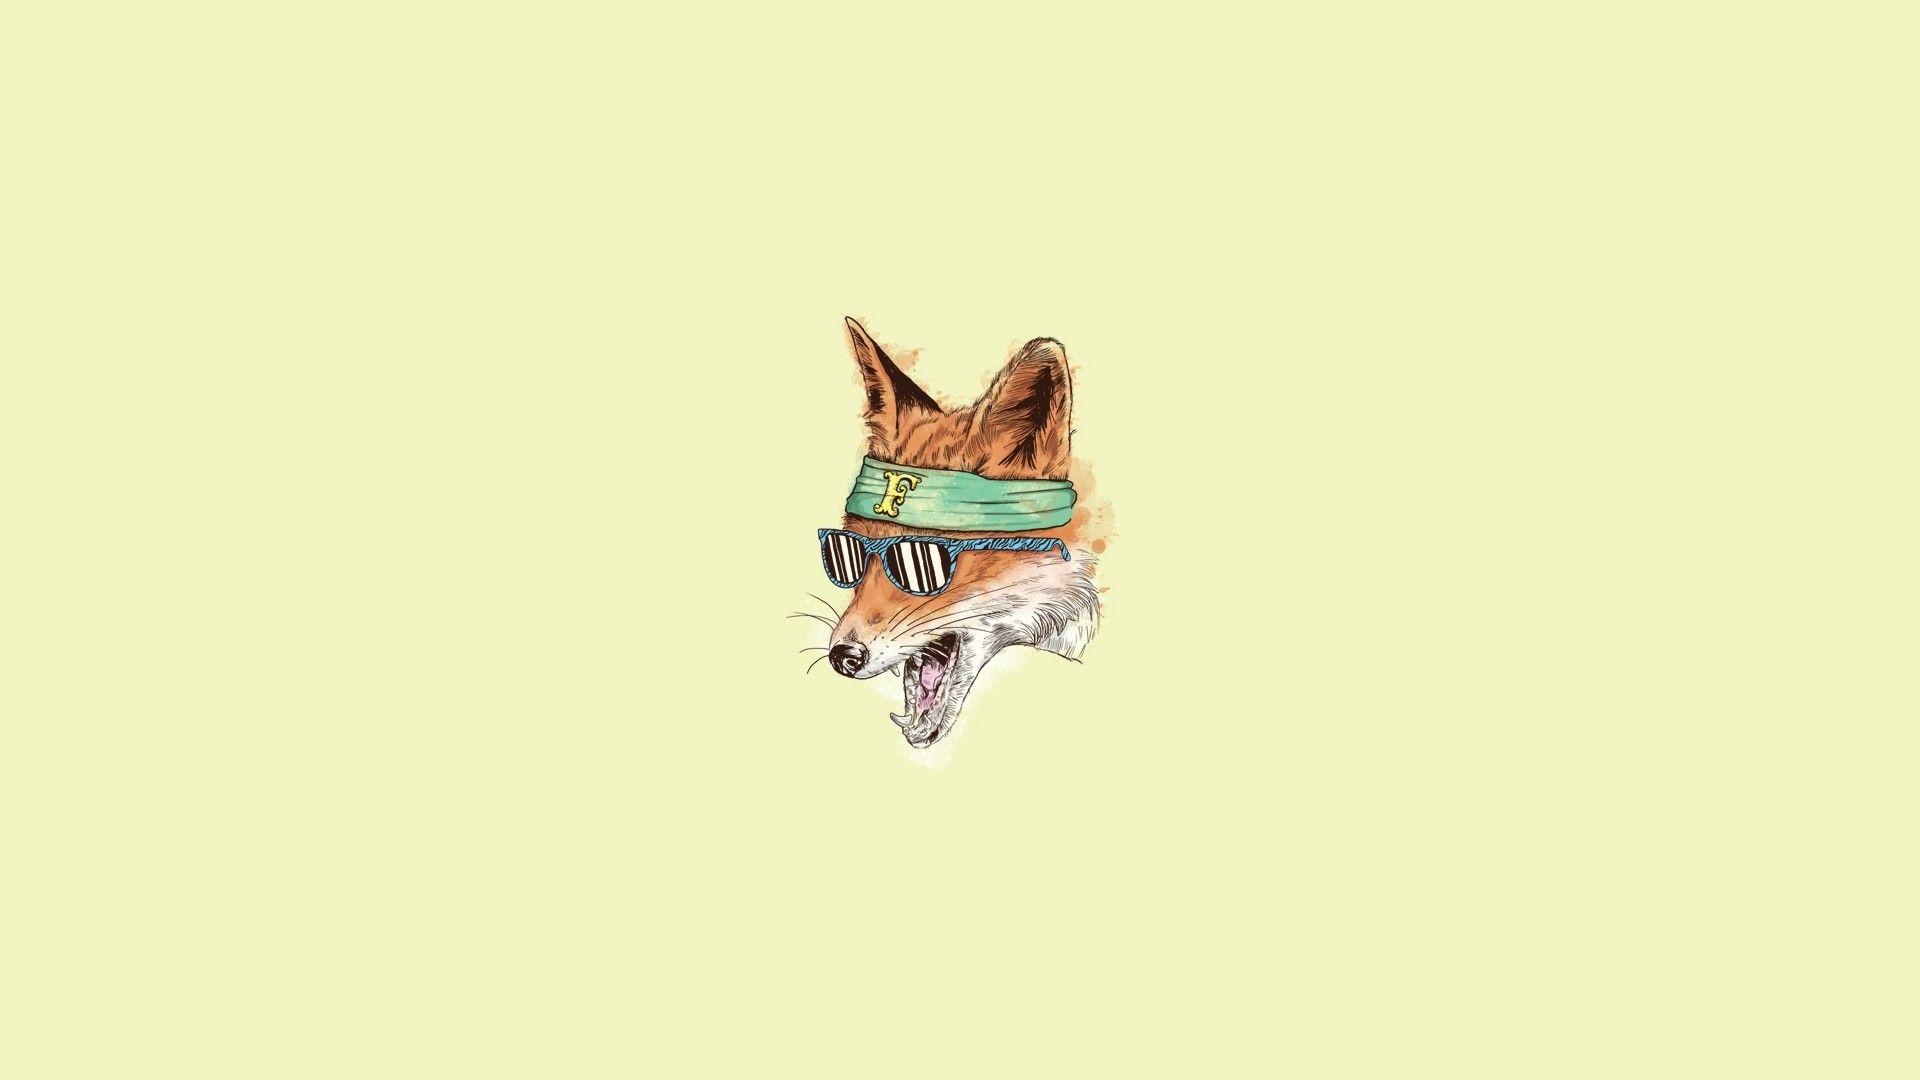 Hipster minimalistic fox 1920x1080 Wallpaper in 2019